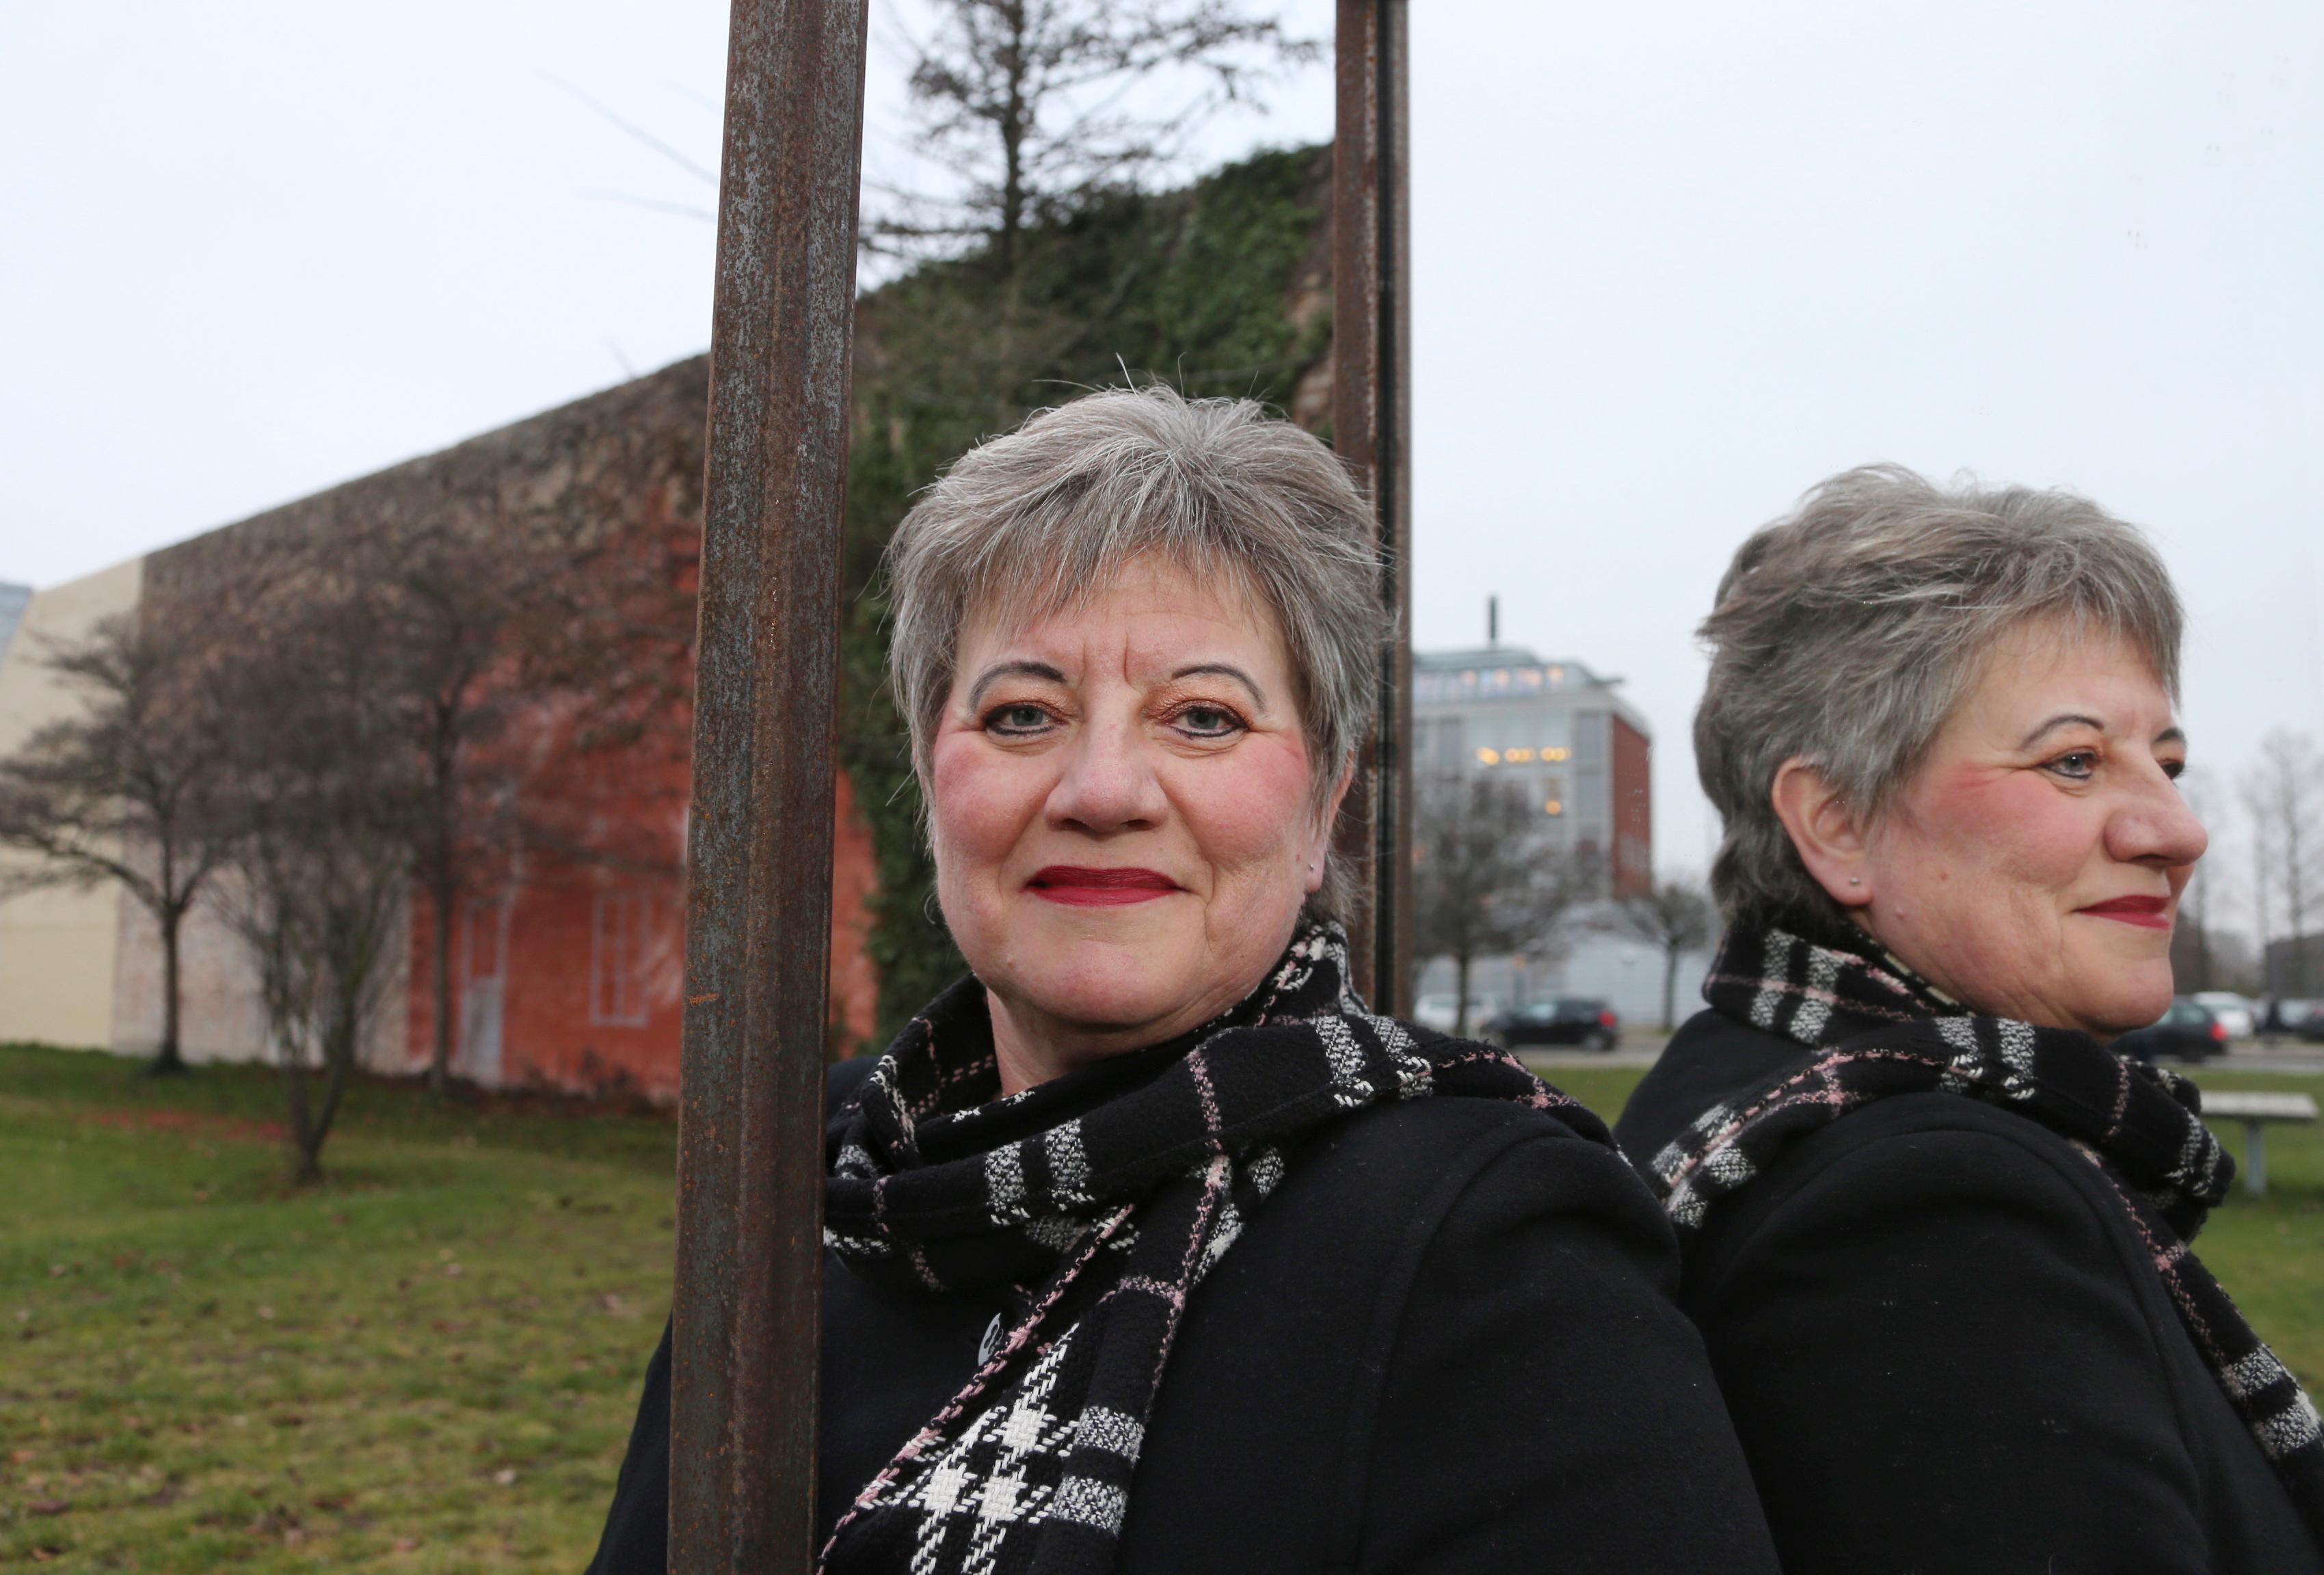 Helle Adelborg (S) på Rigsbjerggård-grunden i Hvidovres bymidte, hvor den omdiskuterede Rigsbjerggård ligger, hvis eksistens­berettigelse  er blevet diskuteret i snart 40 år. I baggrunden til højre ser vi rådhuset. Foto: Ole Mik